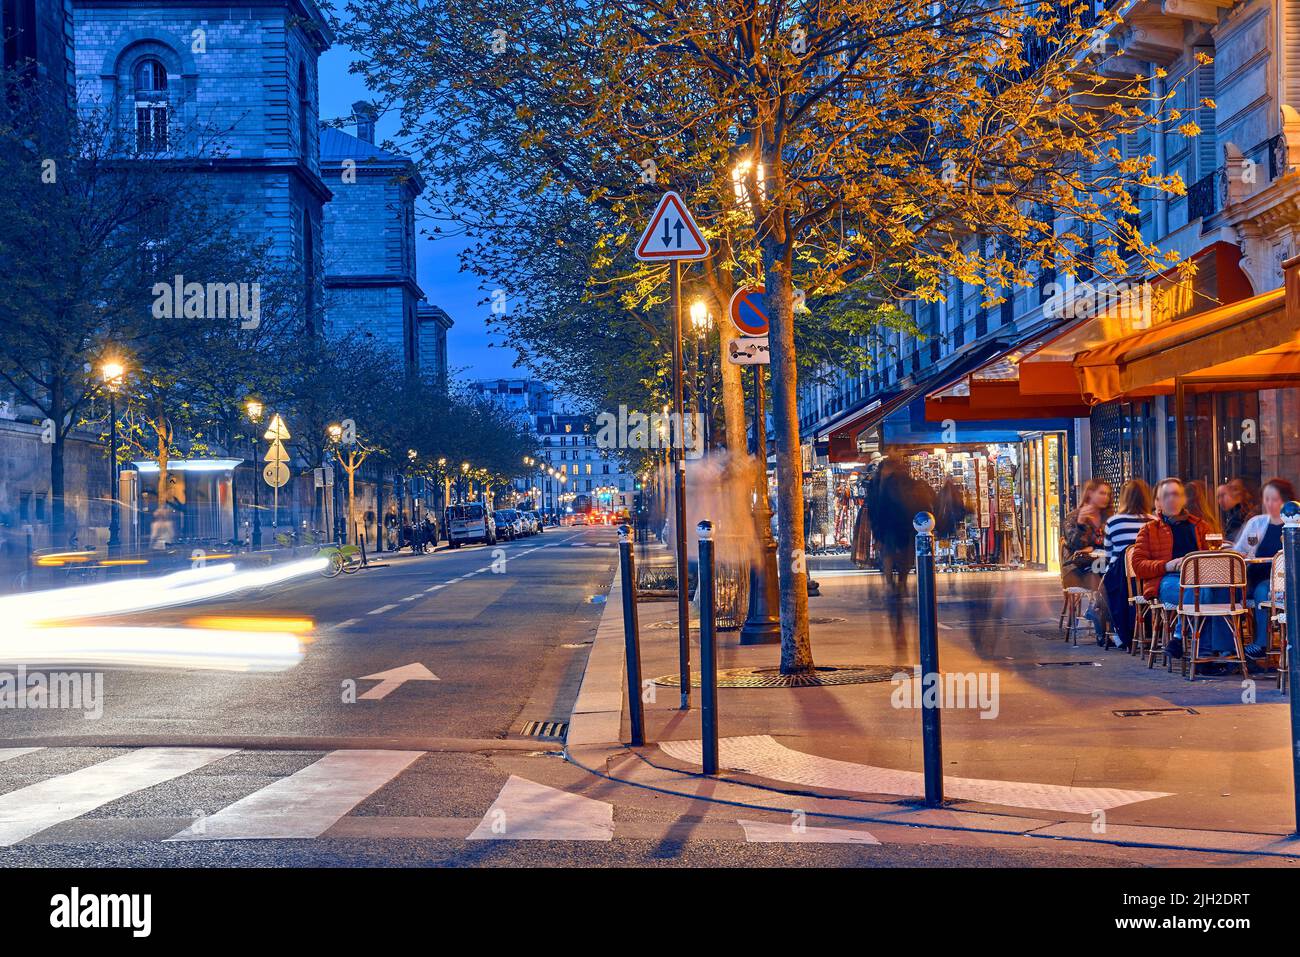 Rues touristiques avec cafés et restaurants à Paris la nuit Banque D'Images